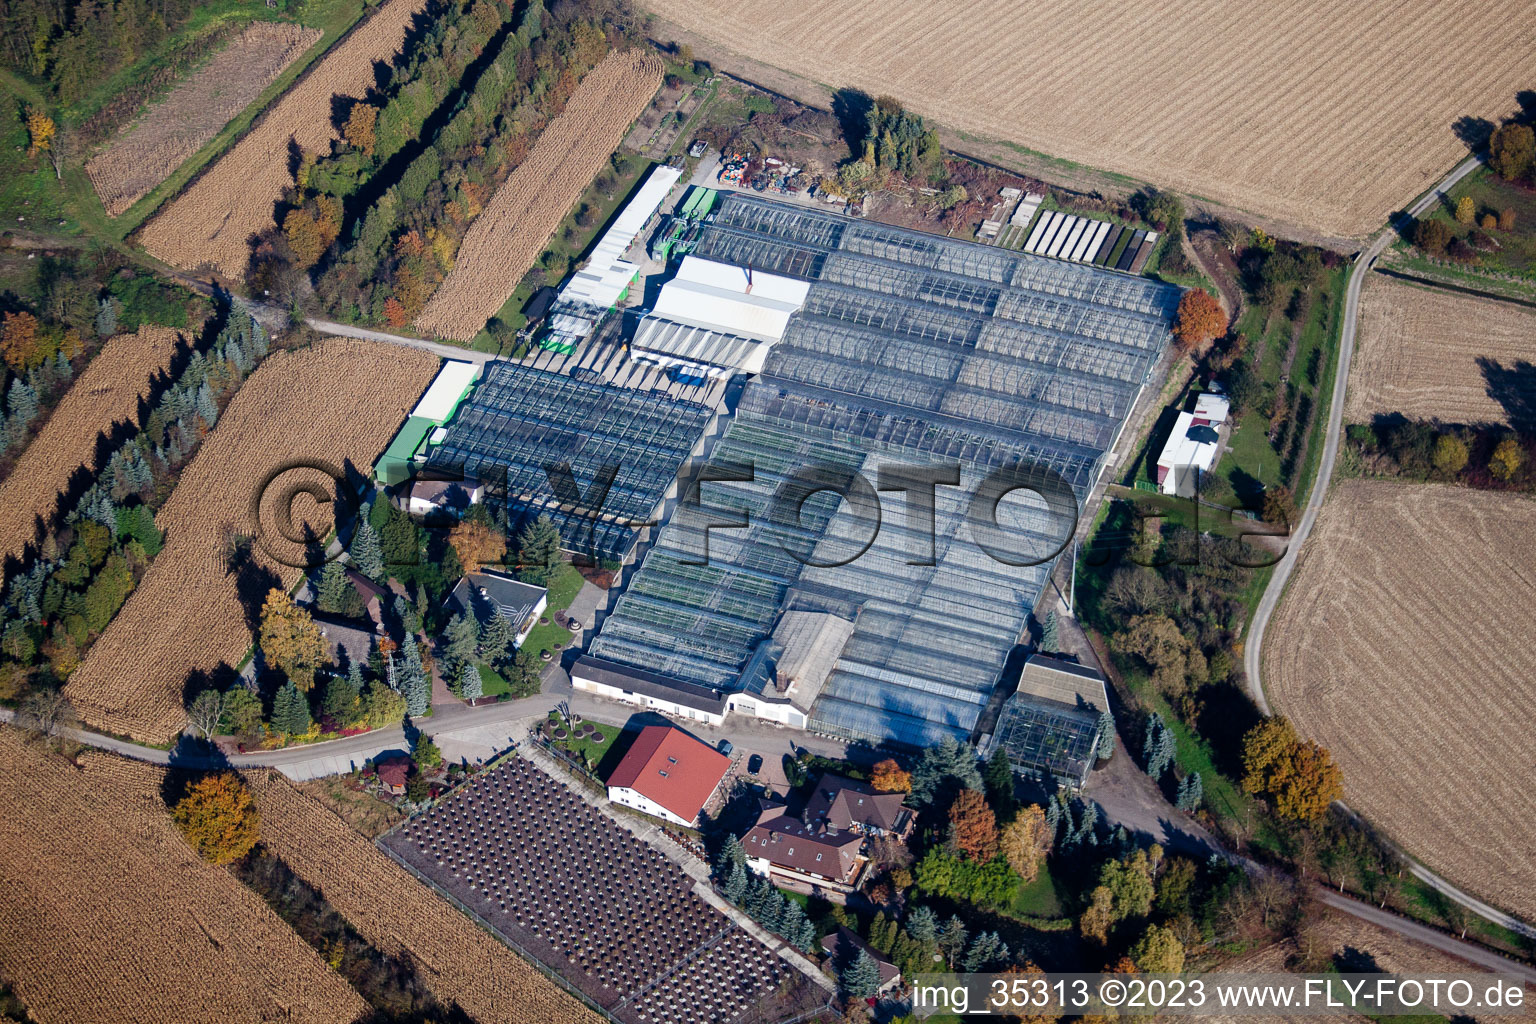 Géranium Endisch GmbH à Hagenbach dans le département Rhénanie-Palatinat, Allemagne hors des airs